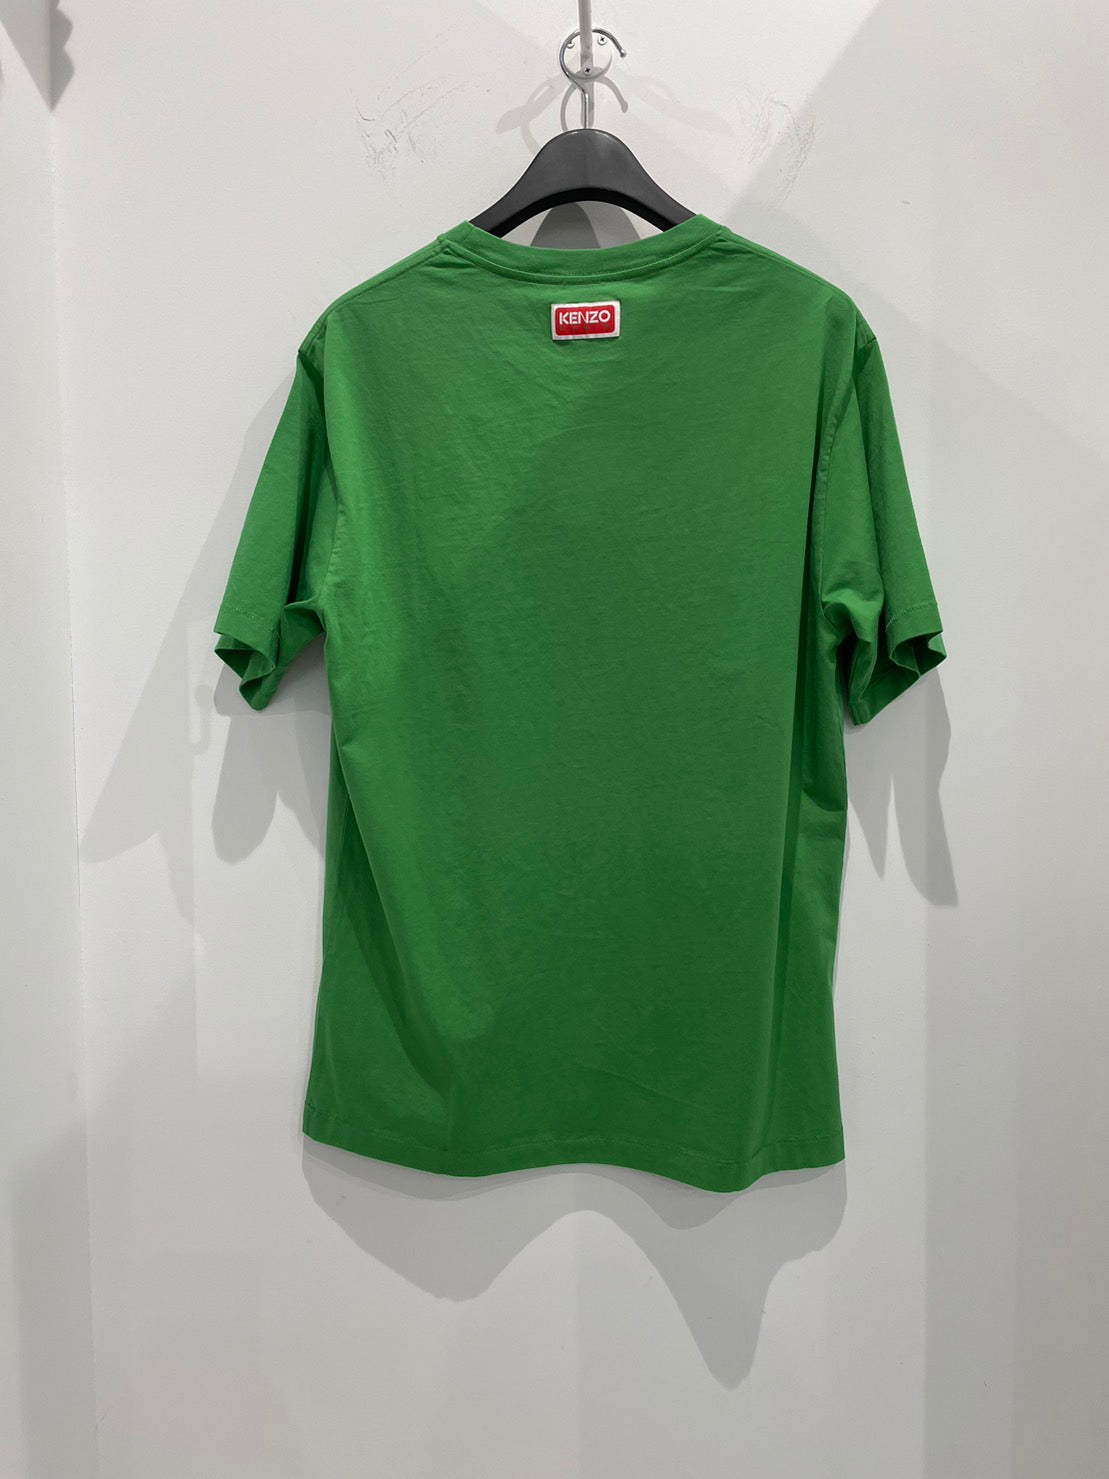 KENZO/ケンゾー Tシャツ <FD55TS445> グリーン(緑)